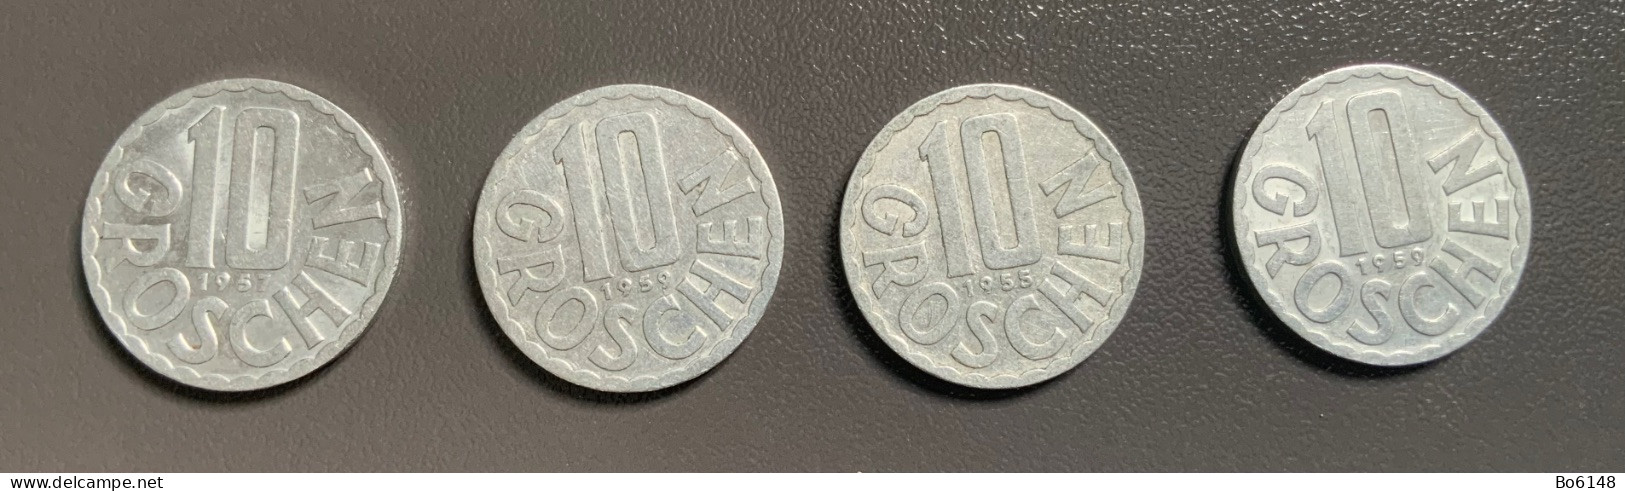 AUSTRIA - OSTERREICH  - 4 Monete 10 GROSCHEN Anno 1955 , 1957 E 1959  - Ottime - Austria